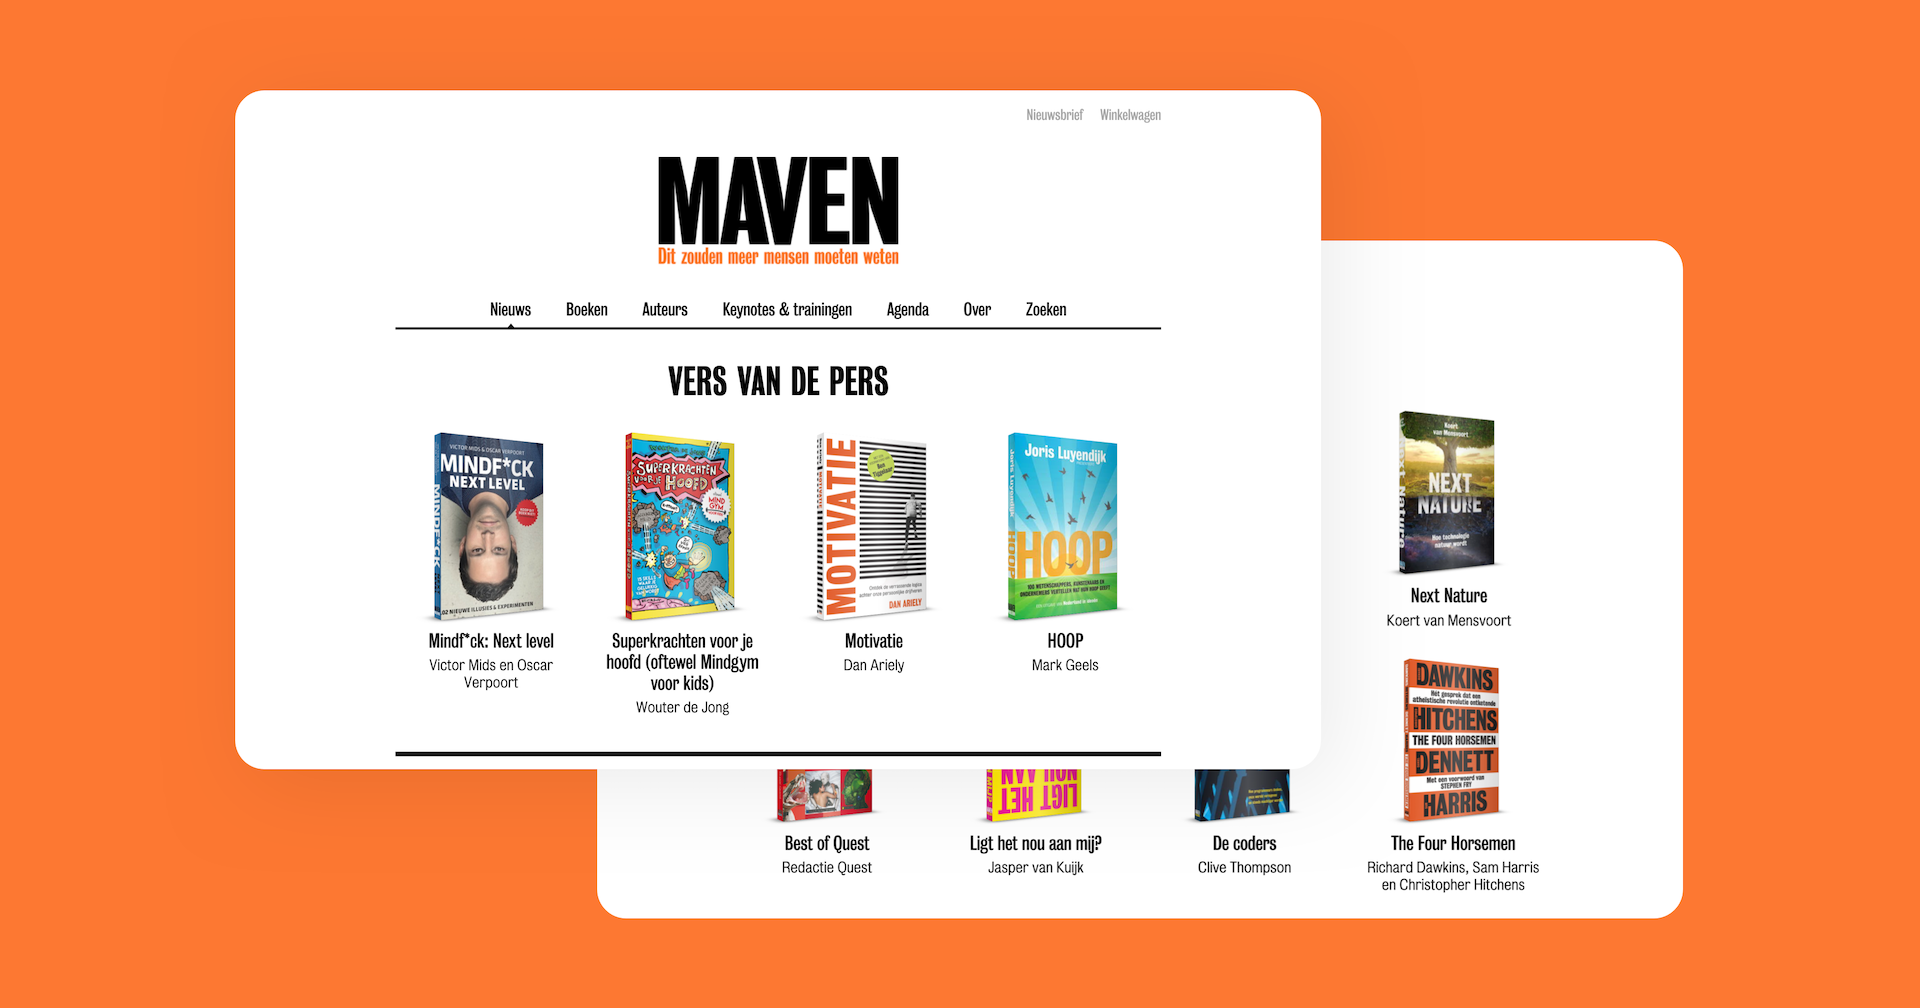 Lancering website Maven - Deze week heeft Maven de nieuwe website online gezet. Een uitgever met een vrolijke invalshoek die weerspiegeld wordt in de website.